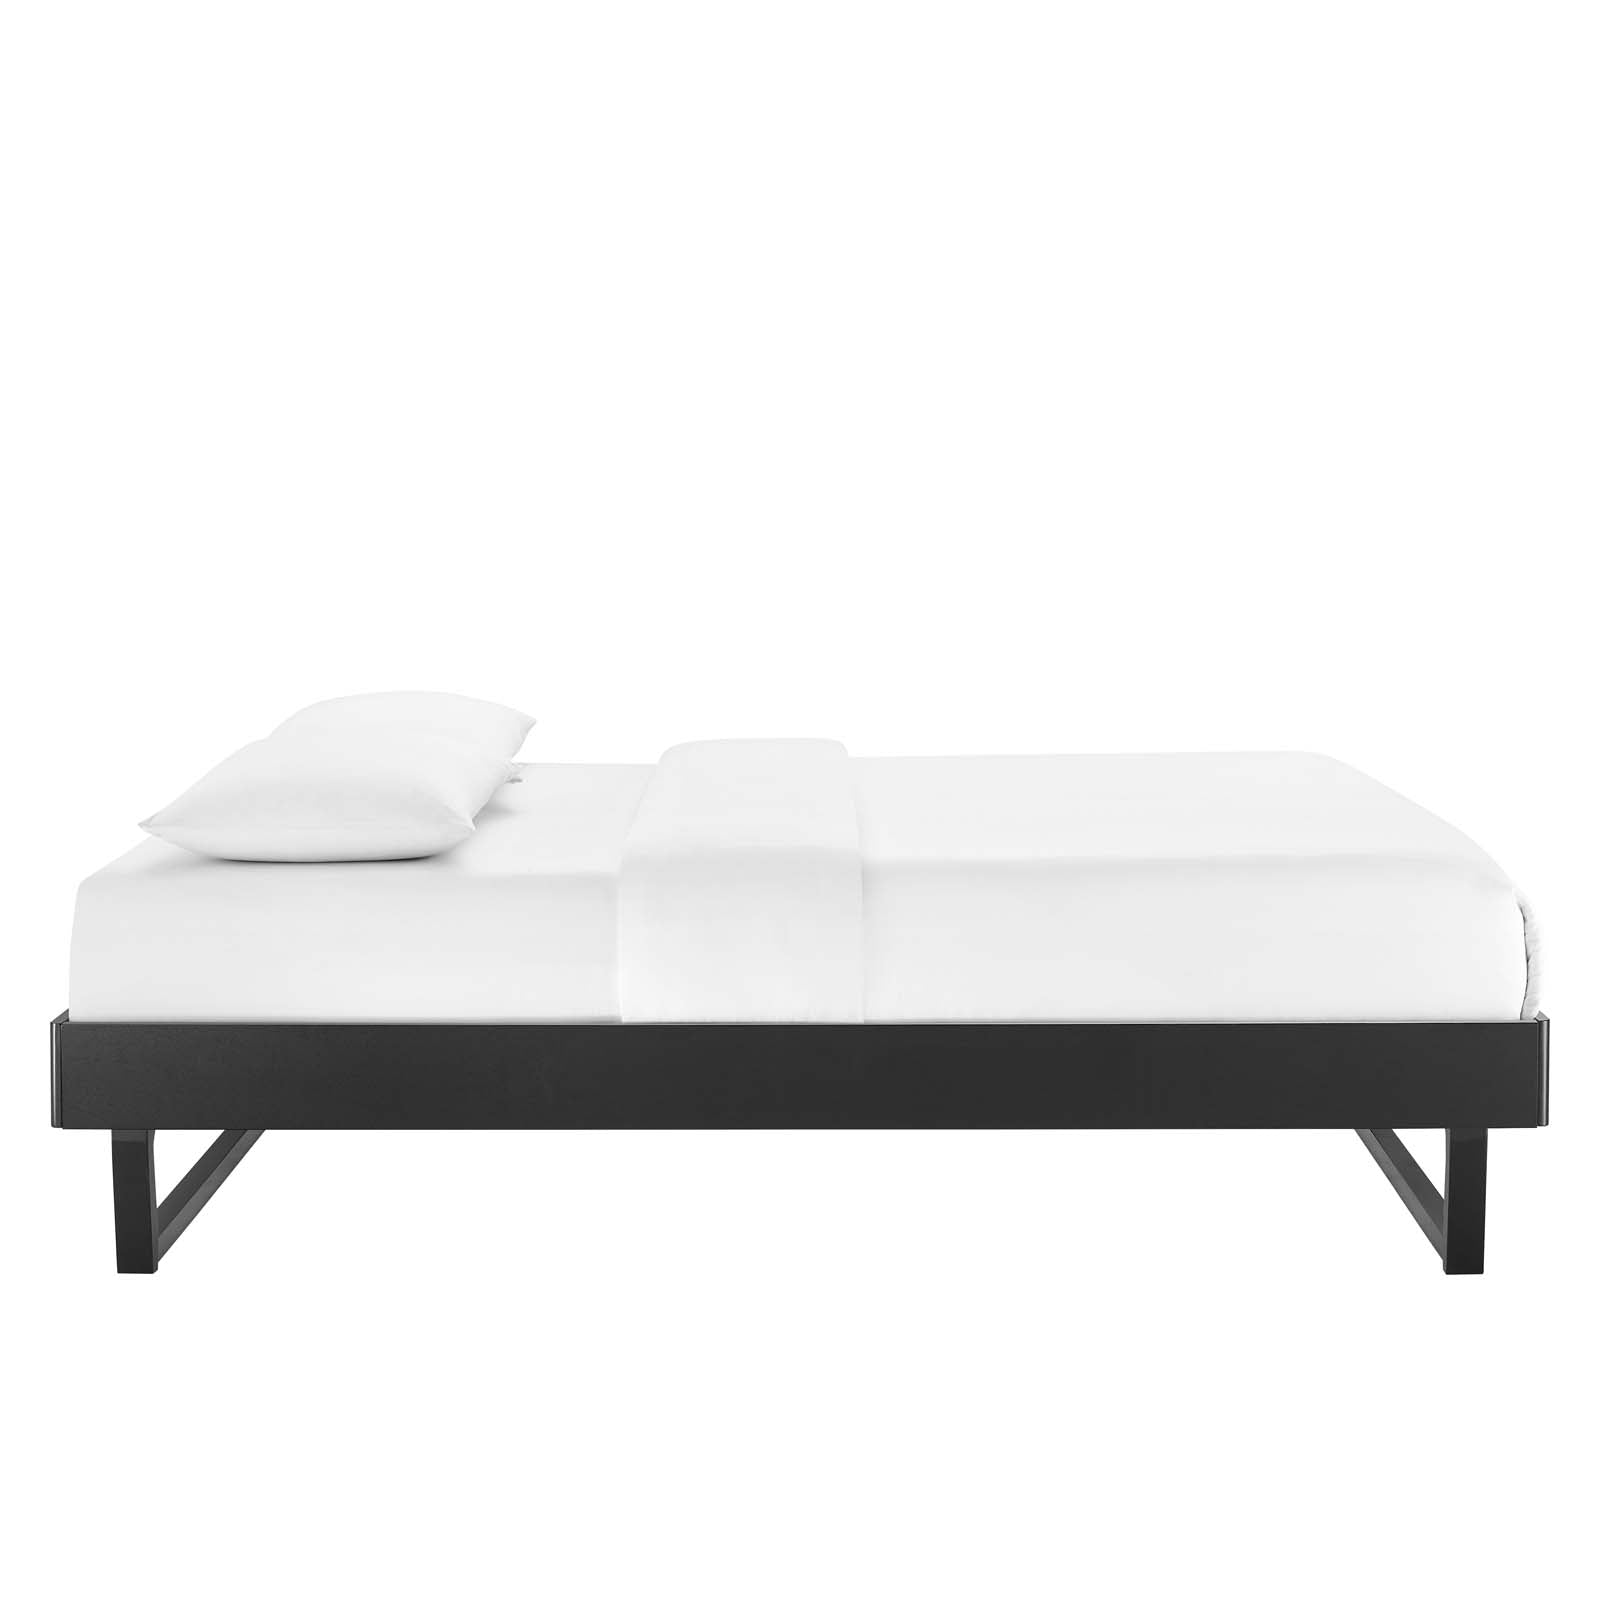 Modway Beds - Billie Full Wood Platform Bed Frame Black